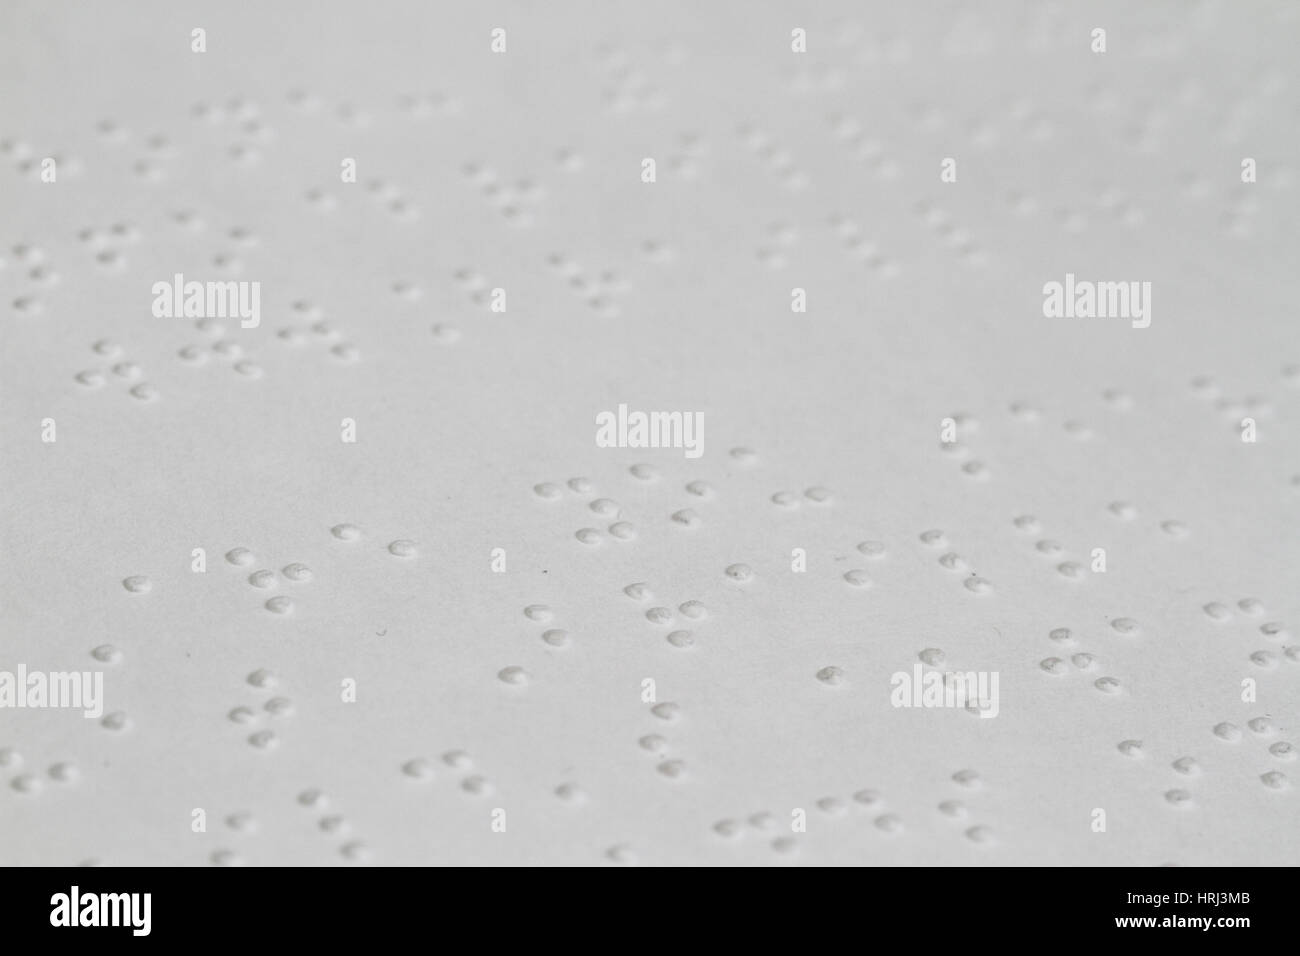 Braille-Schrift Stockfoto